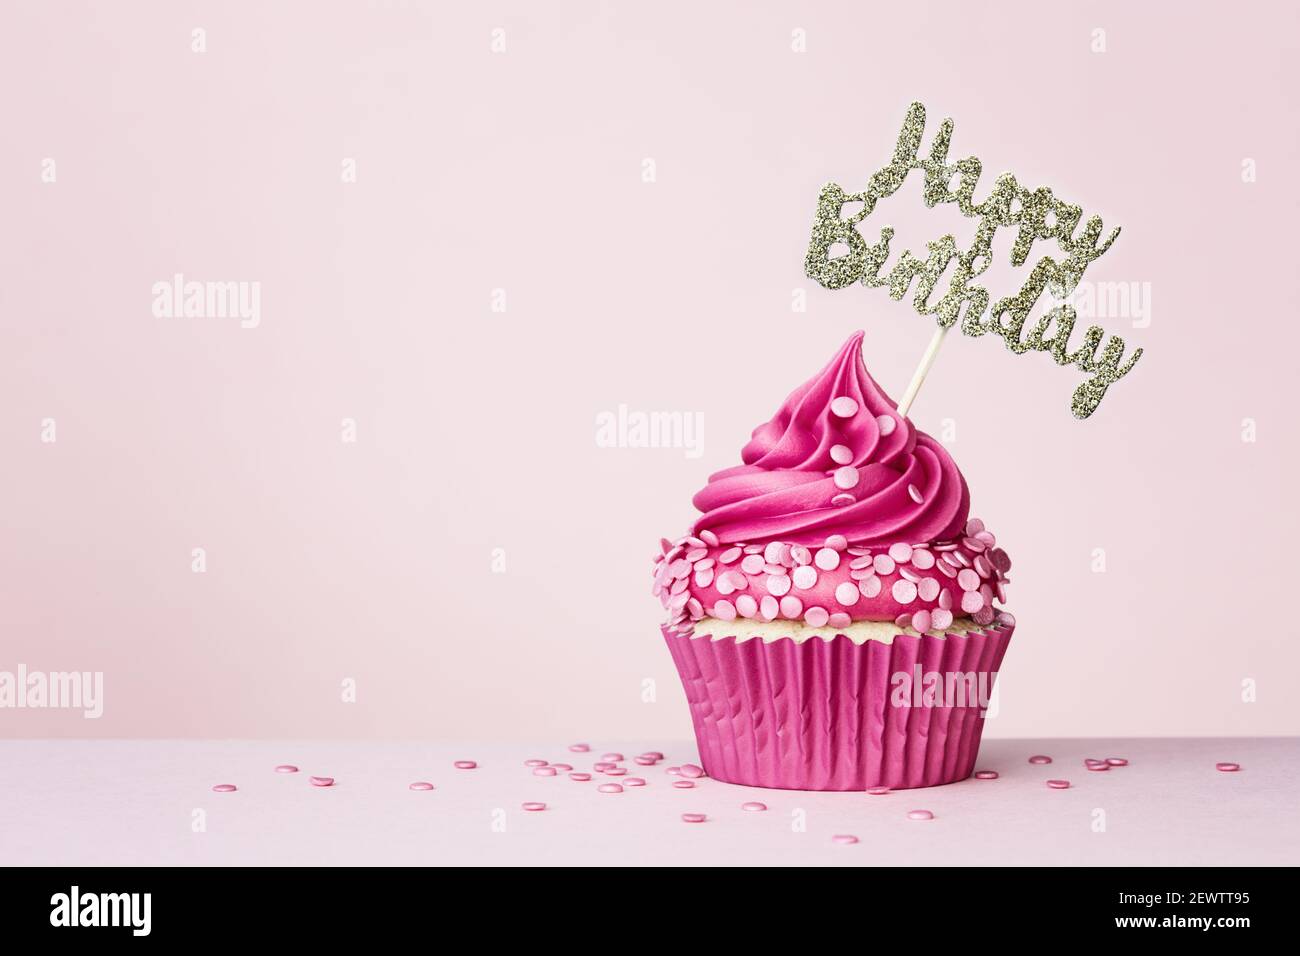 Fondo de cumpleaños con cupcake de celebración con banner de cumpleaños feliz encendido un fondo rosa Foto de stock